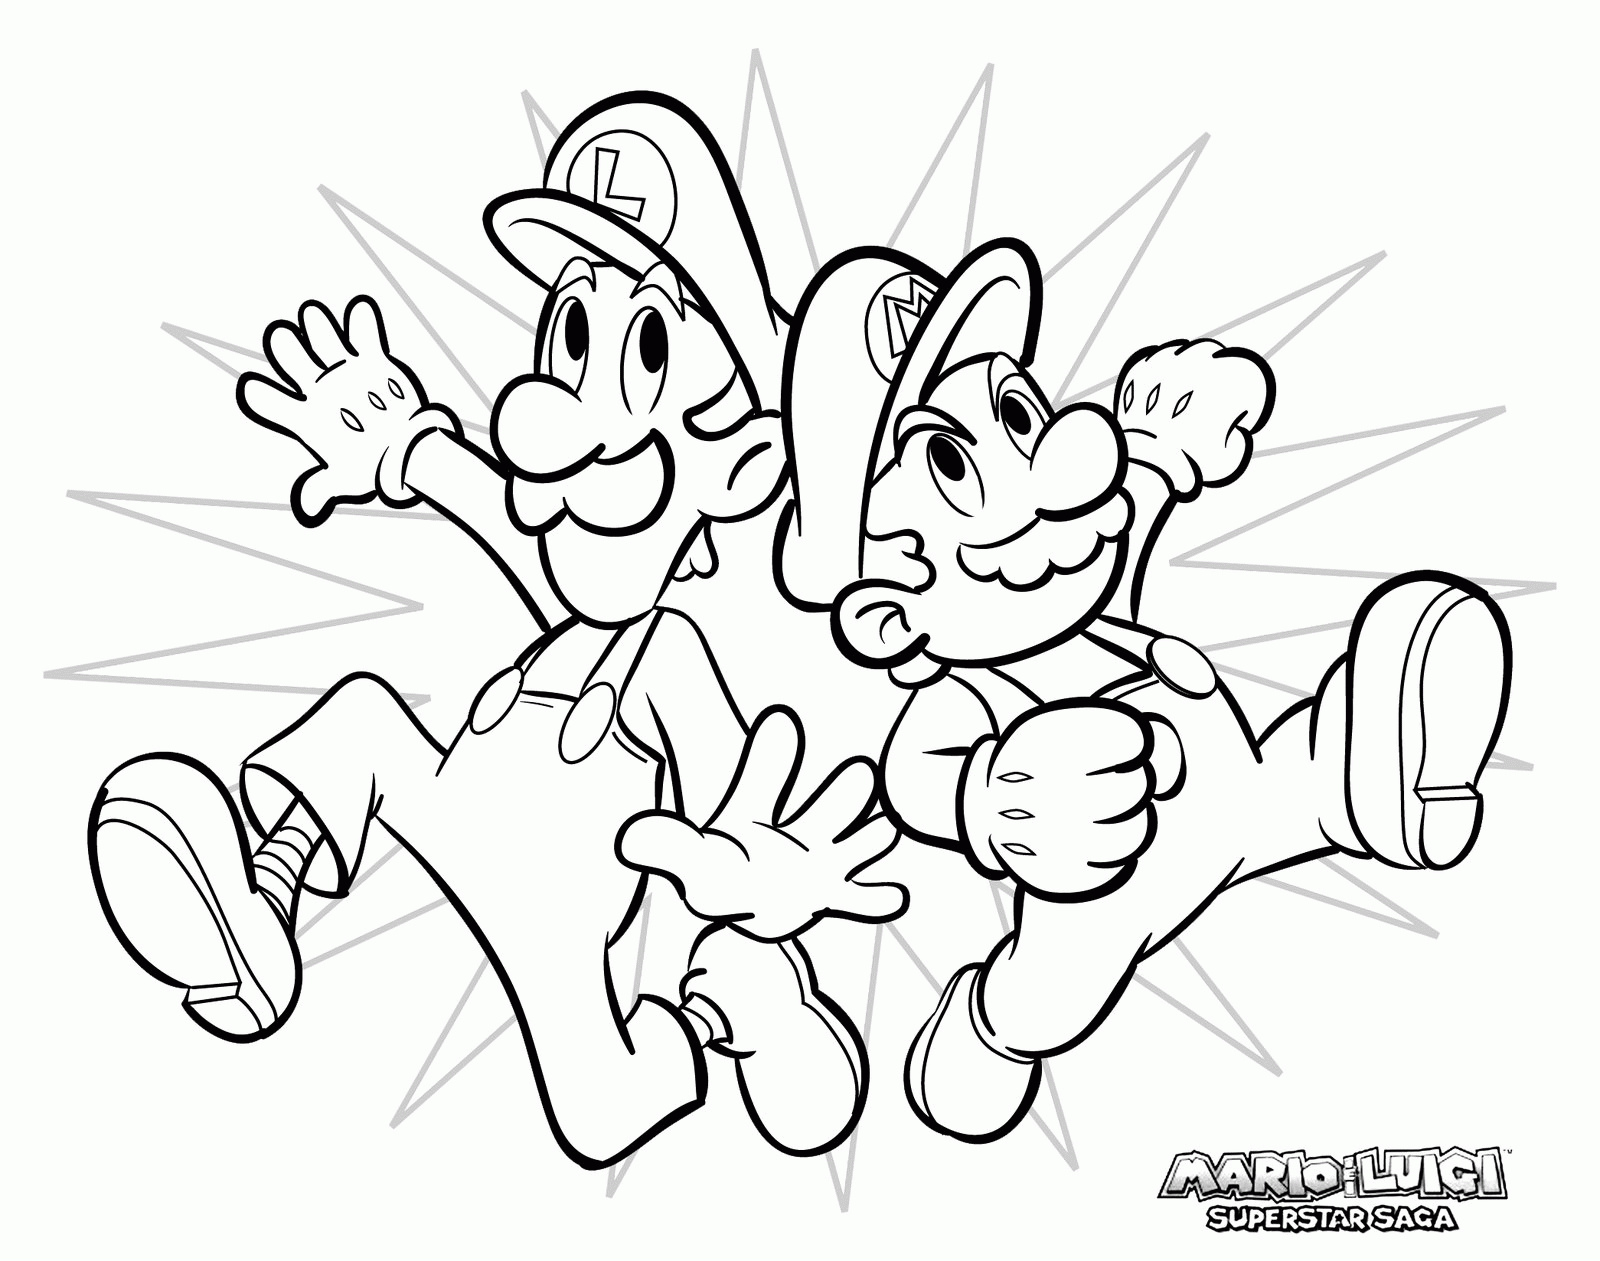 Dessin de Luigi et Mario à imprimer